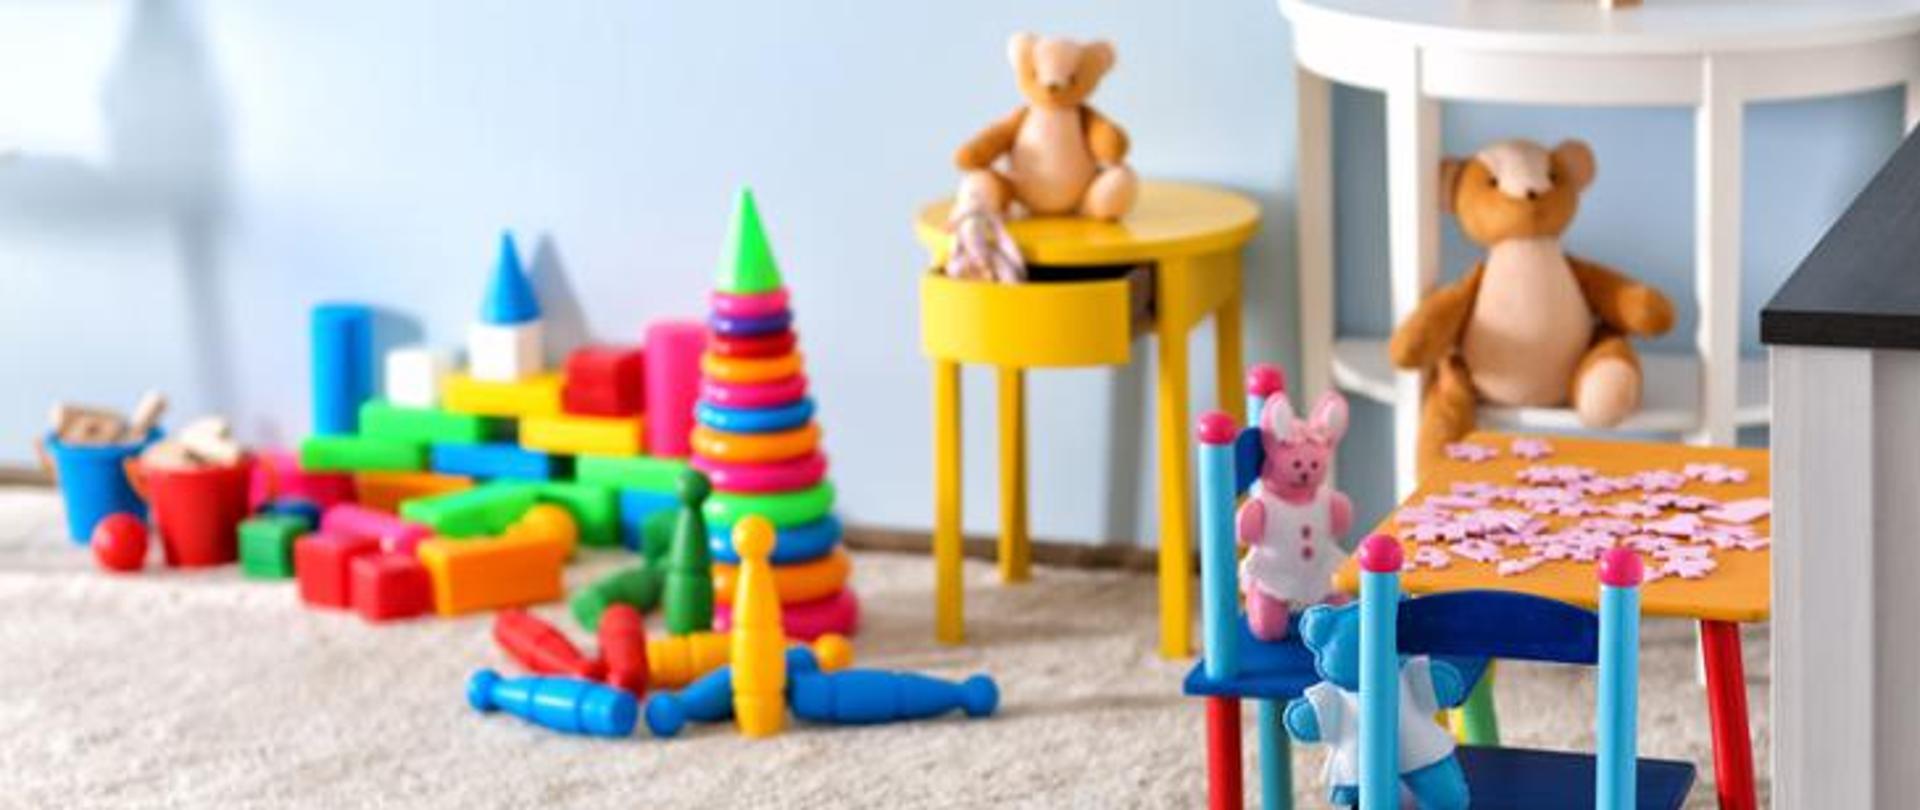 Zdjęcie przedstawia kącik zabaw dla dzieci. Widoczne są zabawki wraz ze stolikiem, na którym znajdują się puzzle. 